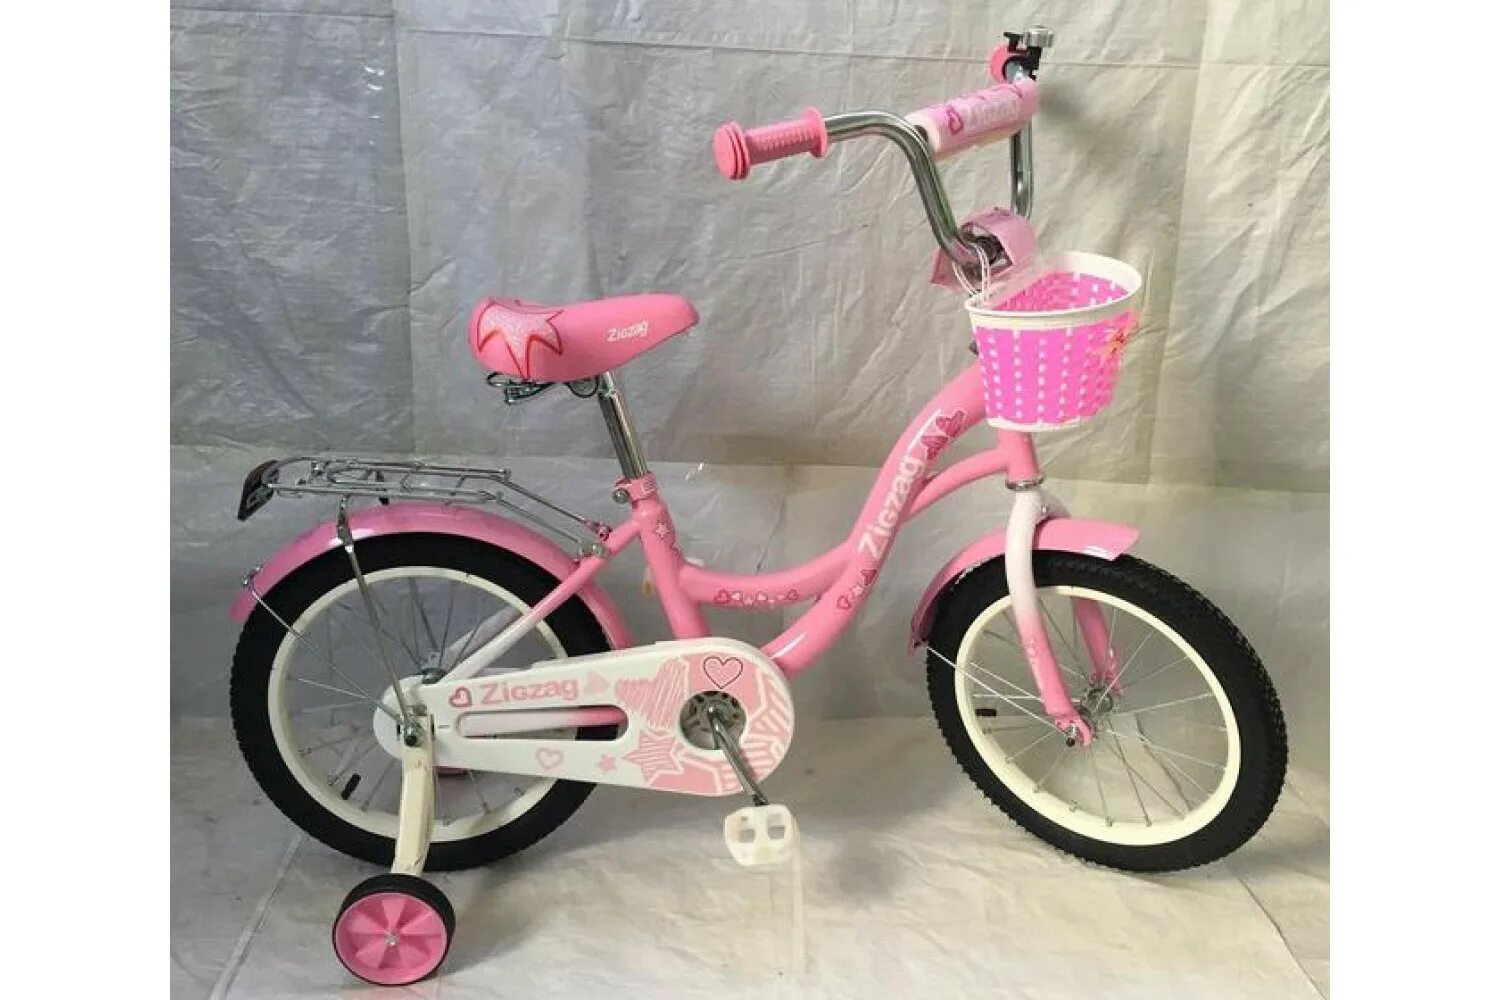 Купить велосипед колеса 18. Велосипед Zigzag 16 girl розовый. Велосипед двухколесный Zigzag girl 14 розовый. Велосипед Zig Zag 18. Велосипед стелс для девочки 4 года розовый.